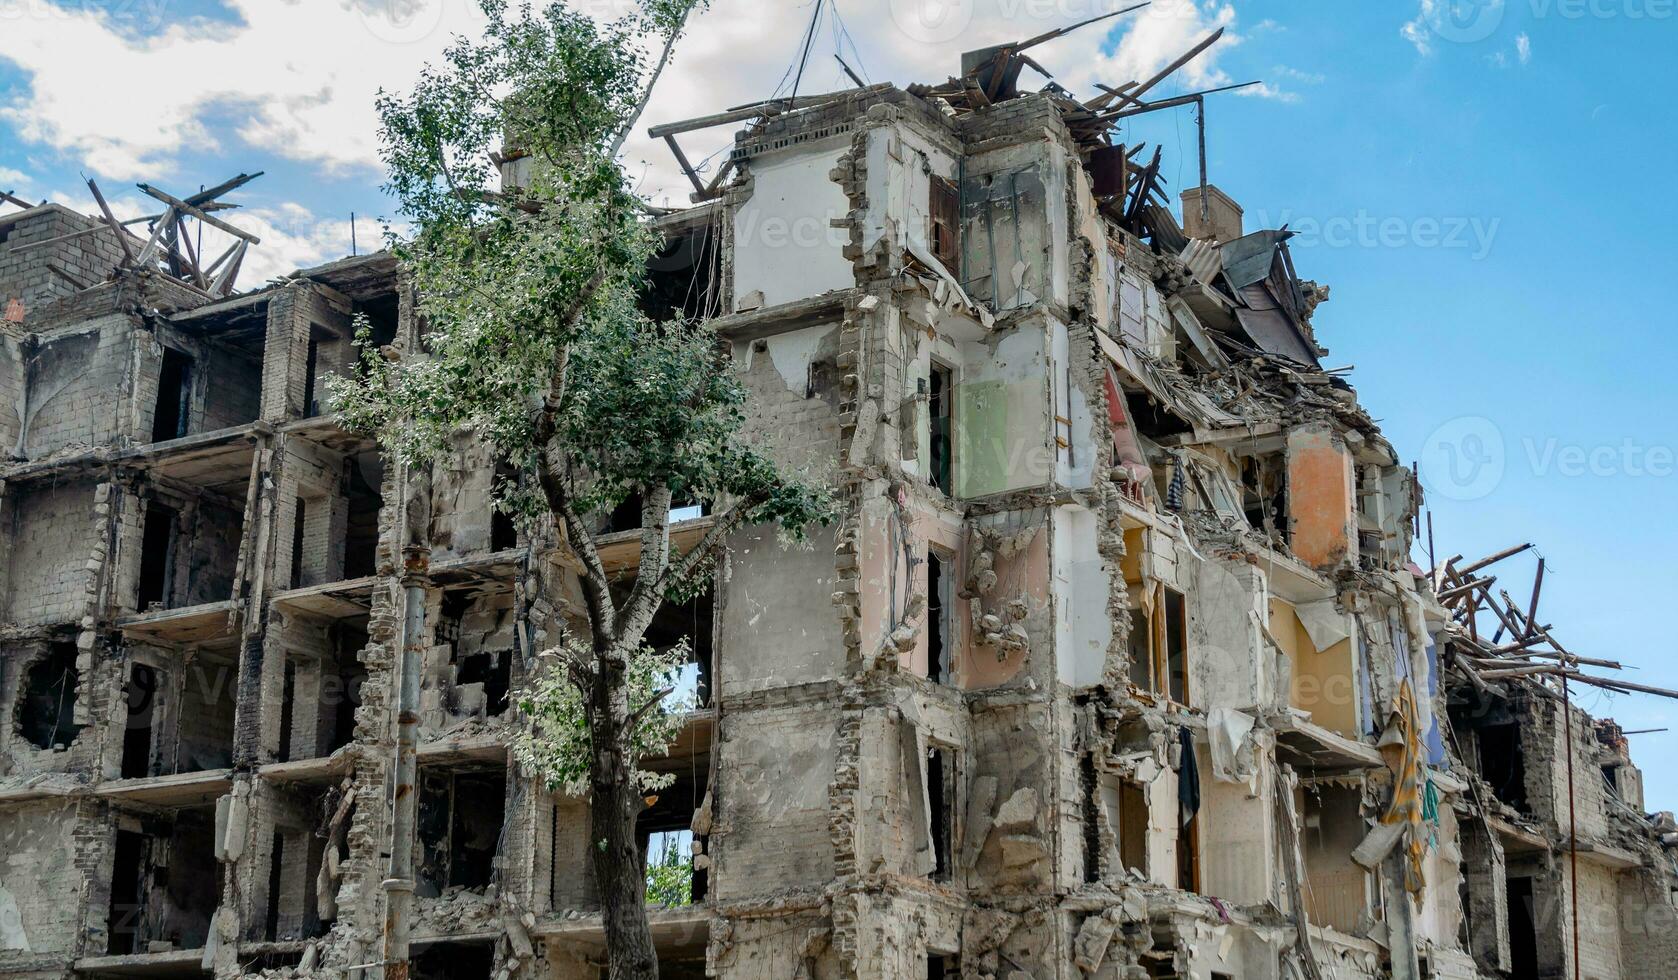 destruido y quemado casas en el ciudad en Ucrania guerra foto